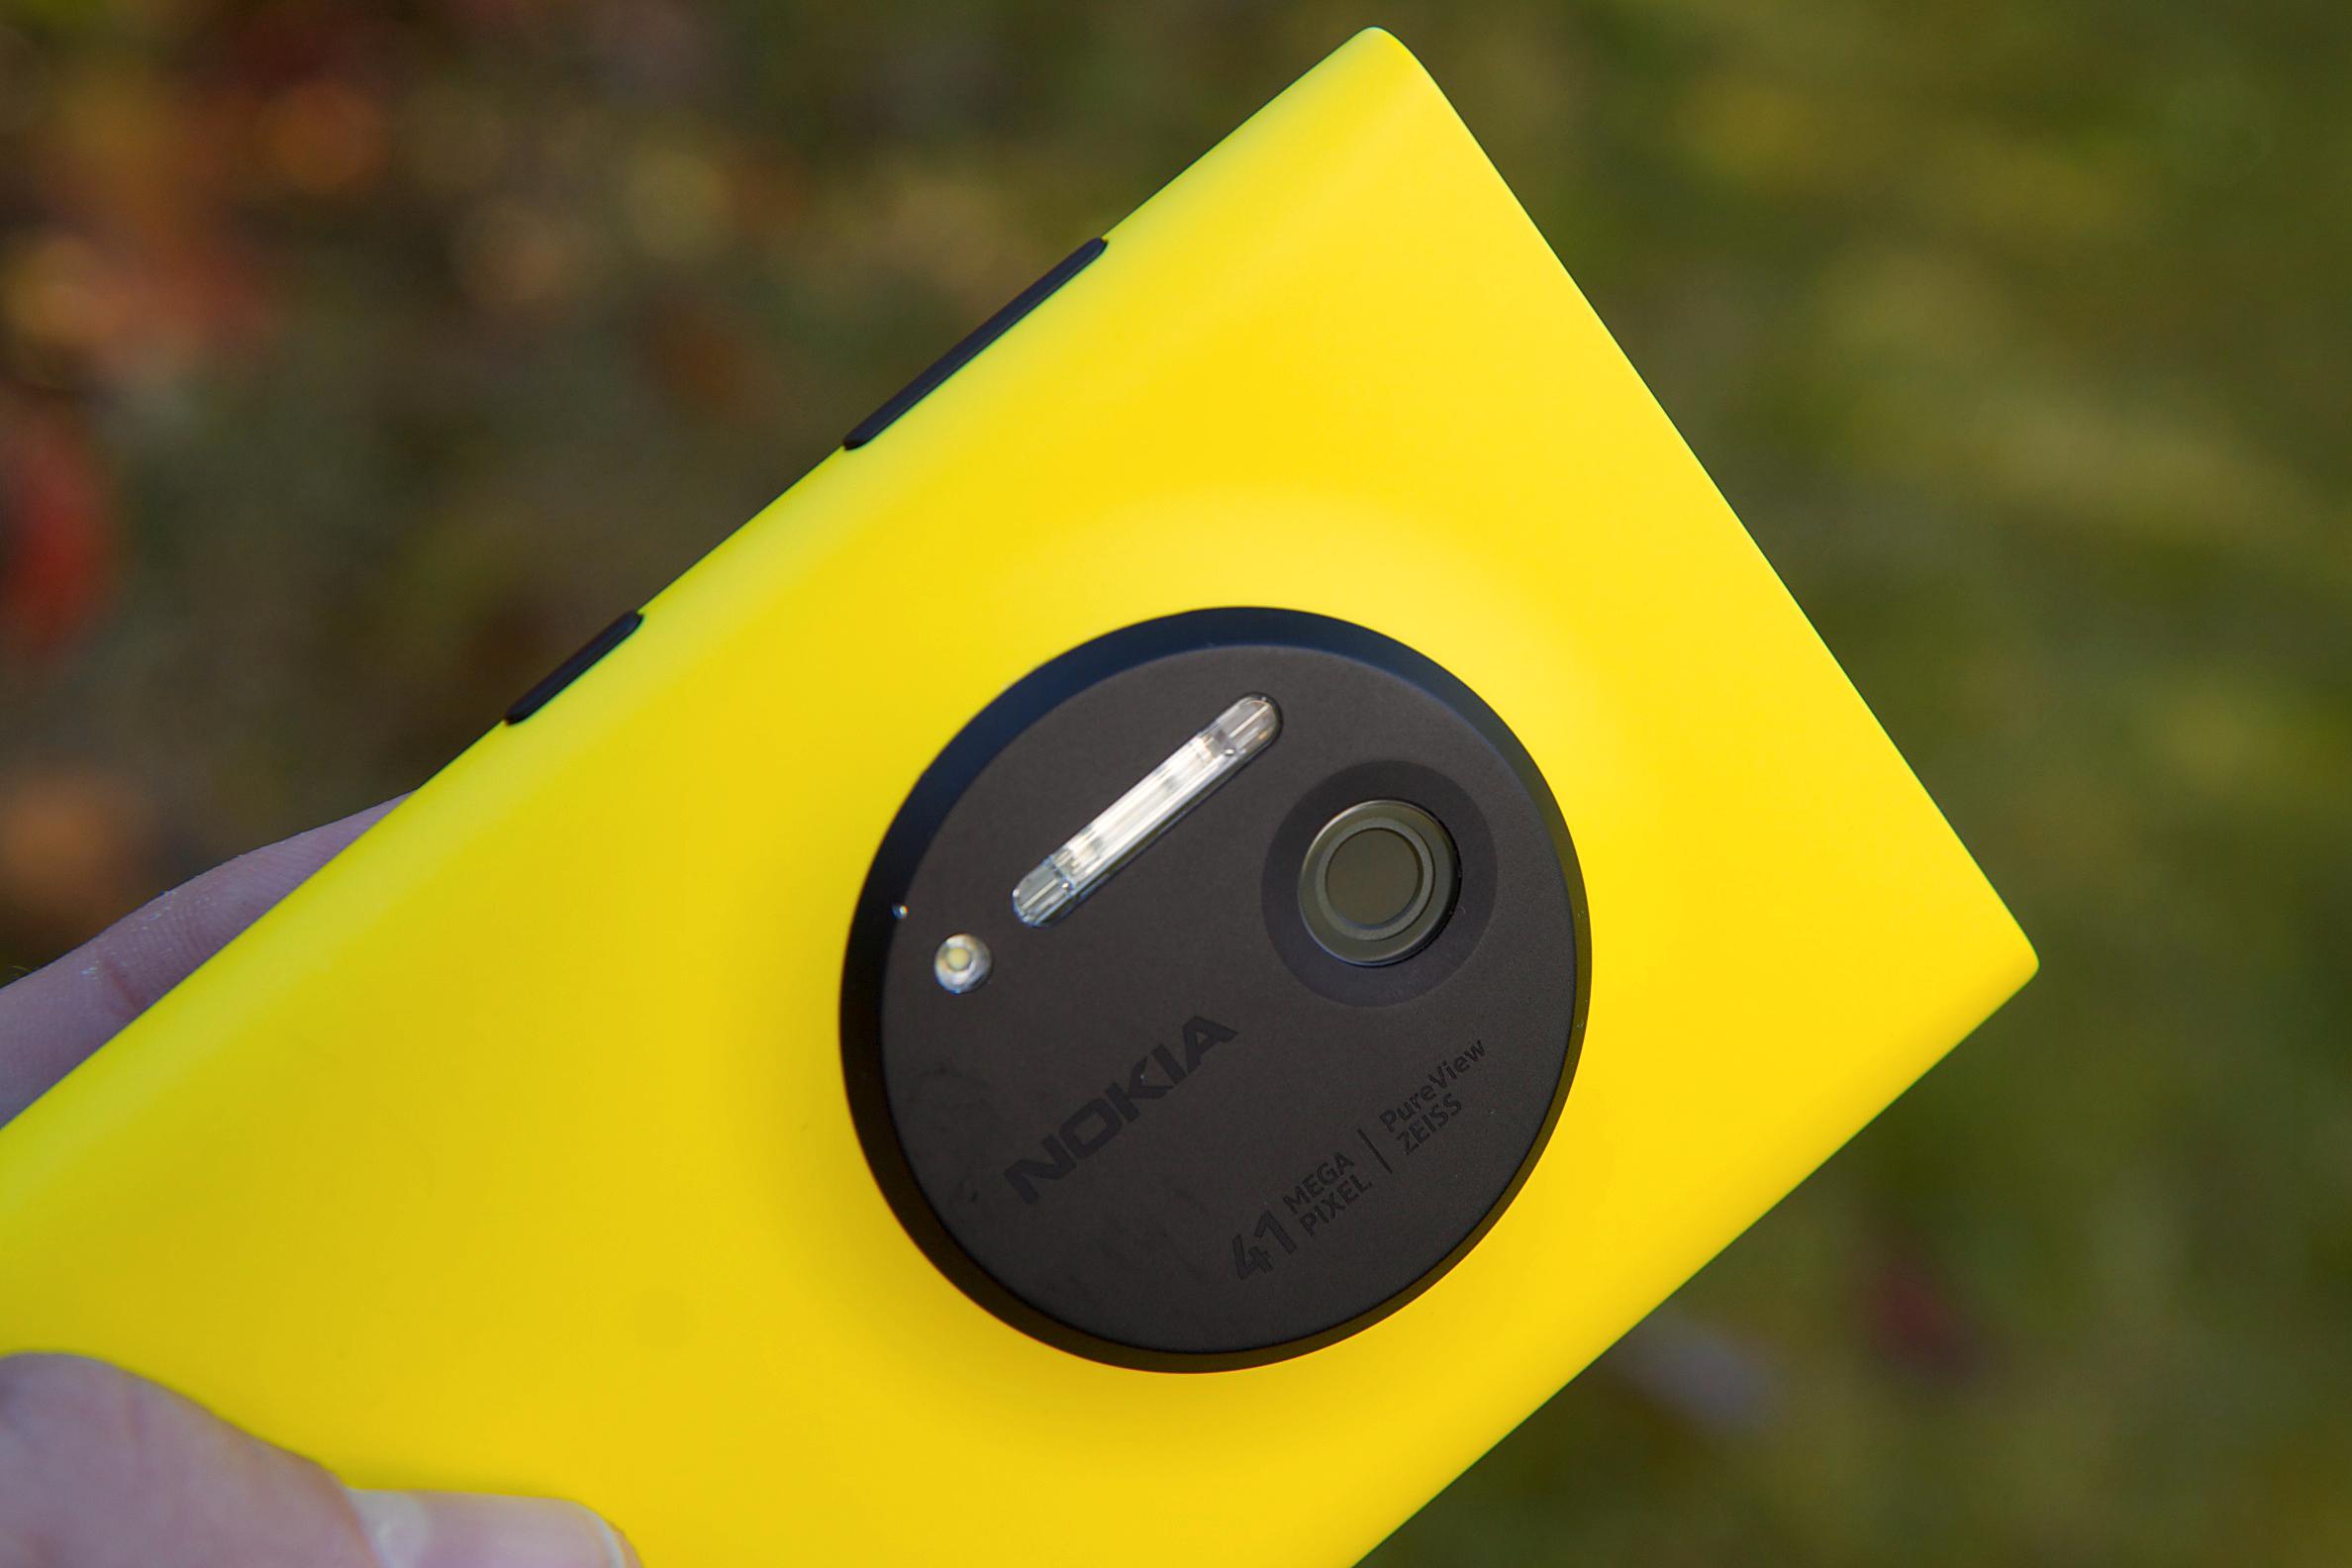 Slik ser Lumia 1020 ut fra baksiden, uten batterigrepet på.Foto: Kurt Lekanger, Amobil.no